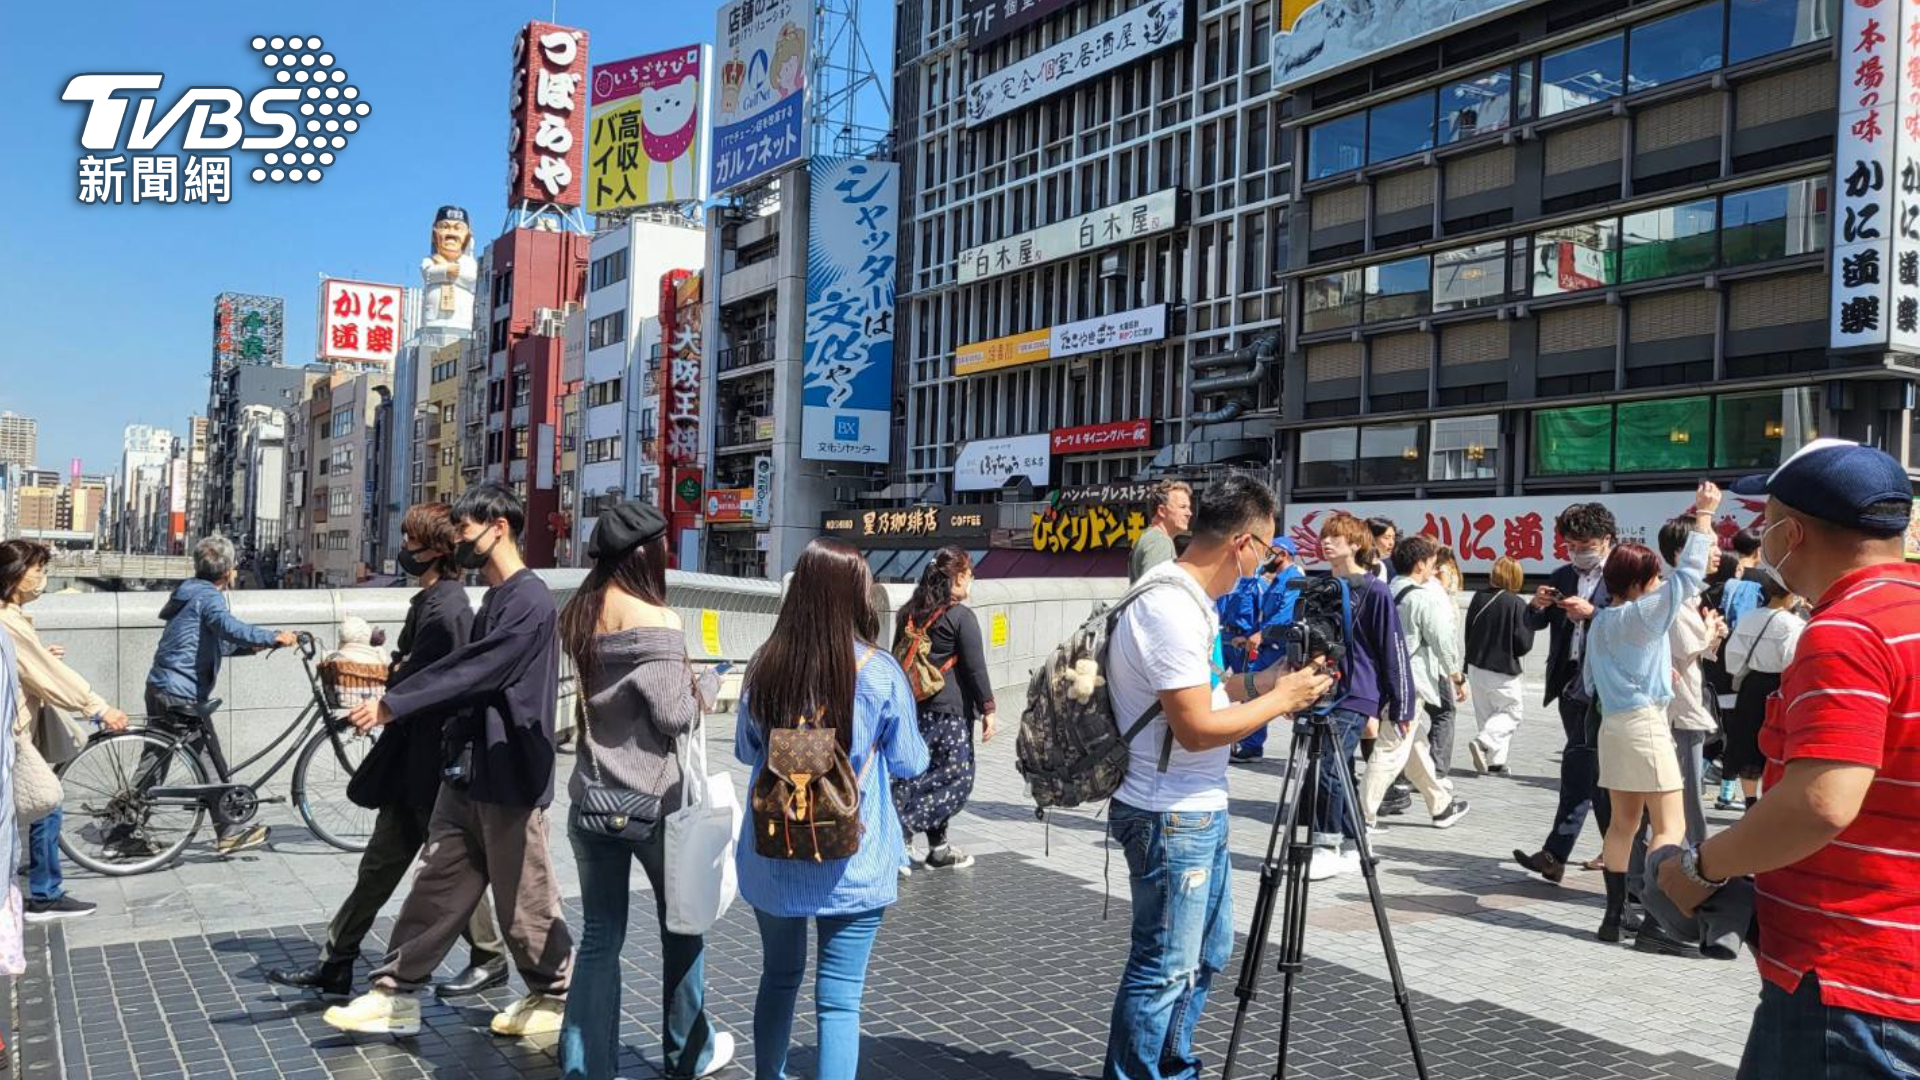 FOCUS午間新聞將推出「盛夏遊日自在玩」日本旅遊特別專題，採訪團隊於大阪進行拍攝 (圖/TVBS) 